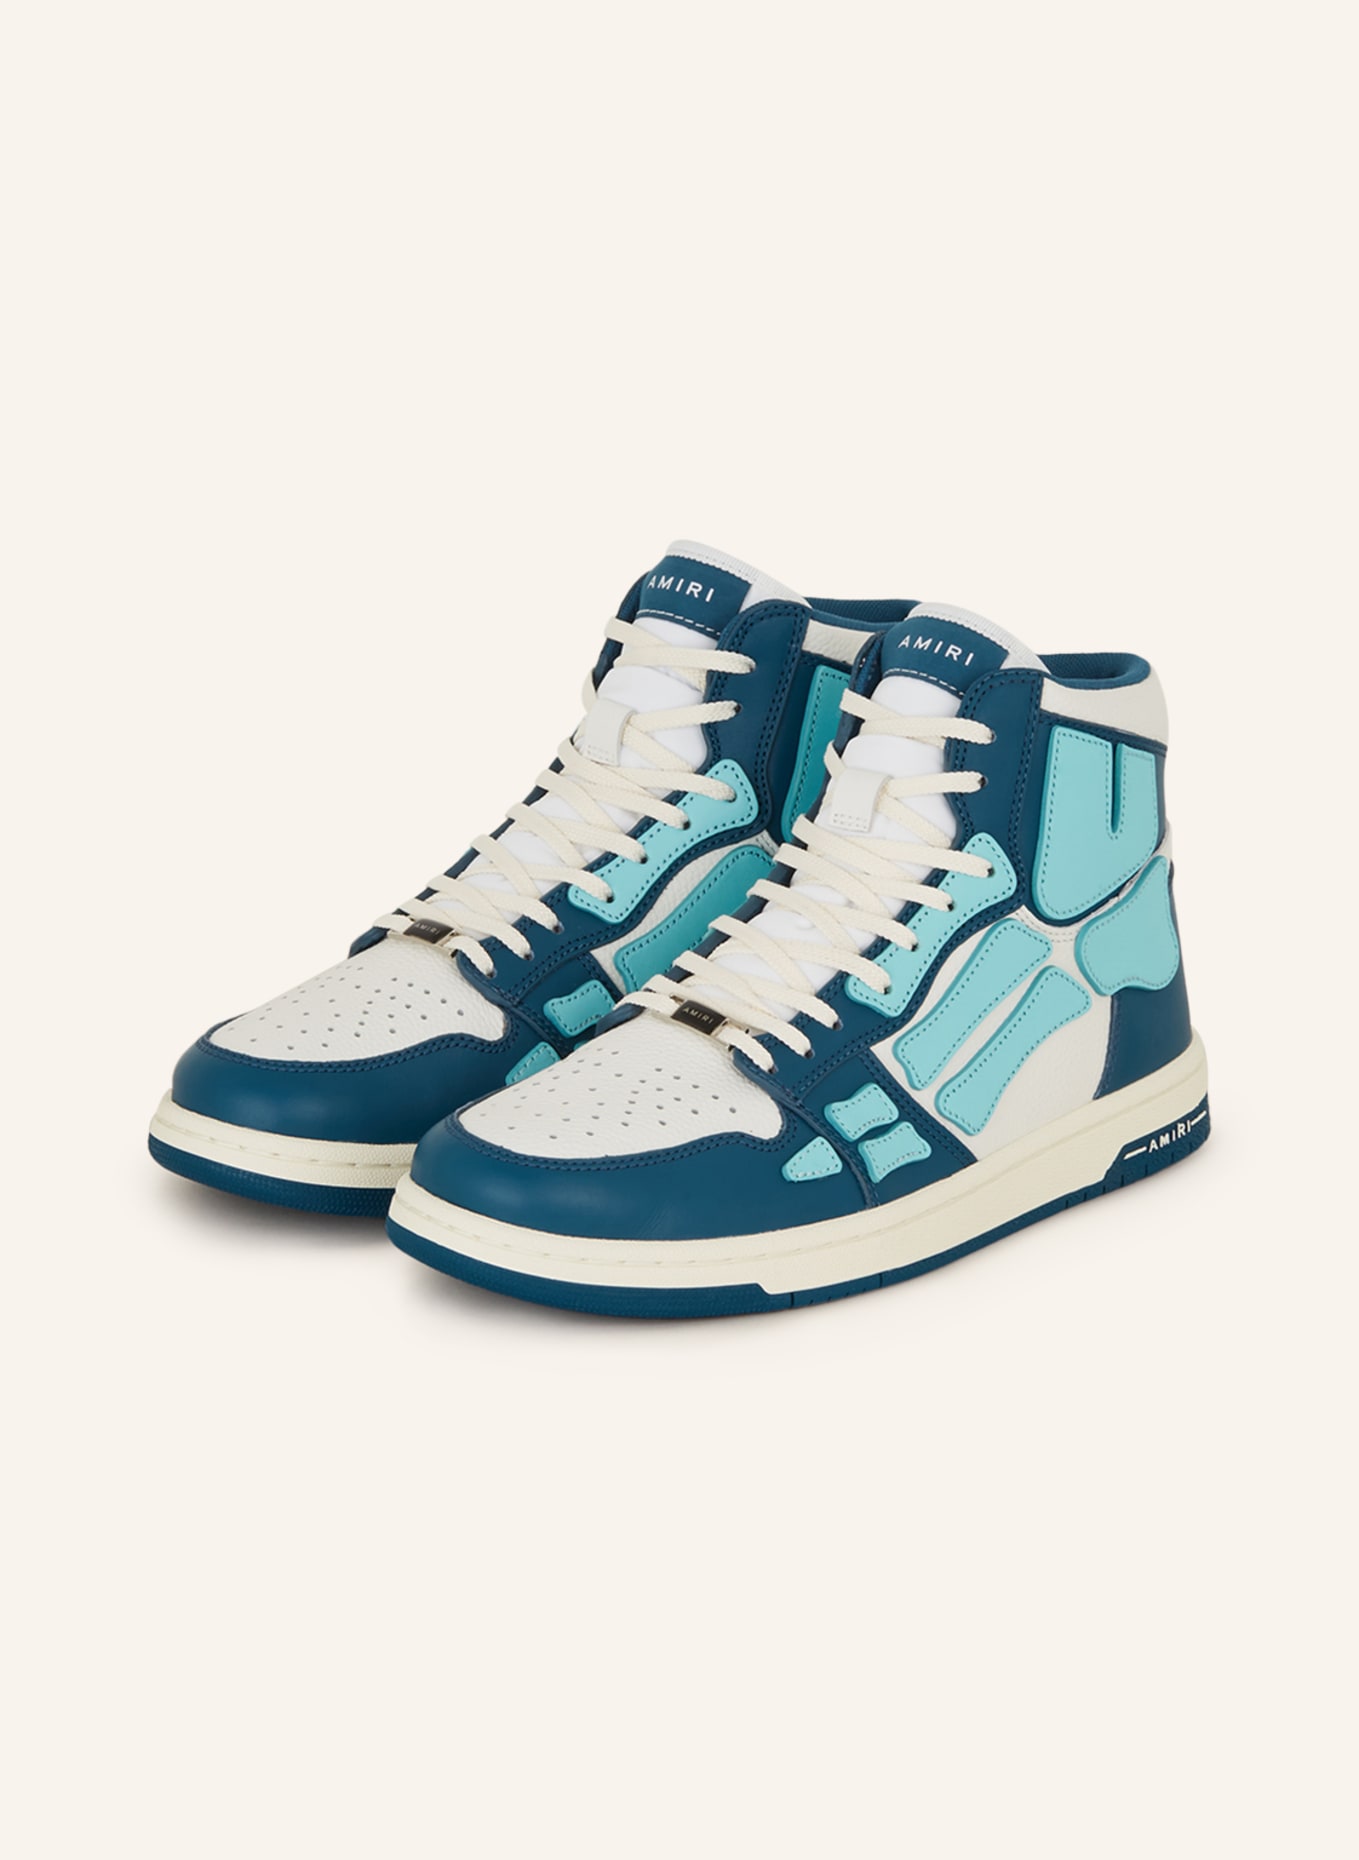 AMIRI Hightop-Sneaker SKELETON, Farbe: WEISS/ PETROL/ TÜRKIS (Bild 1)